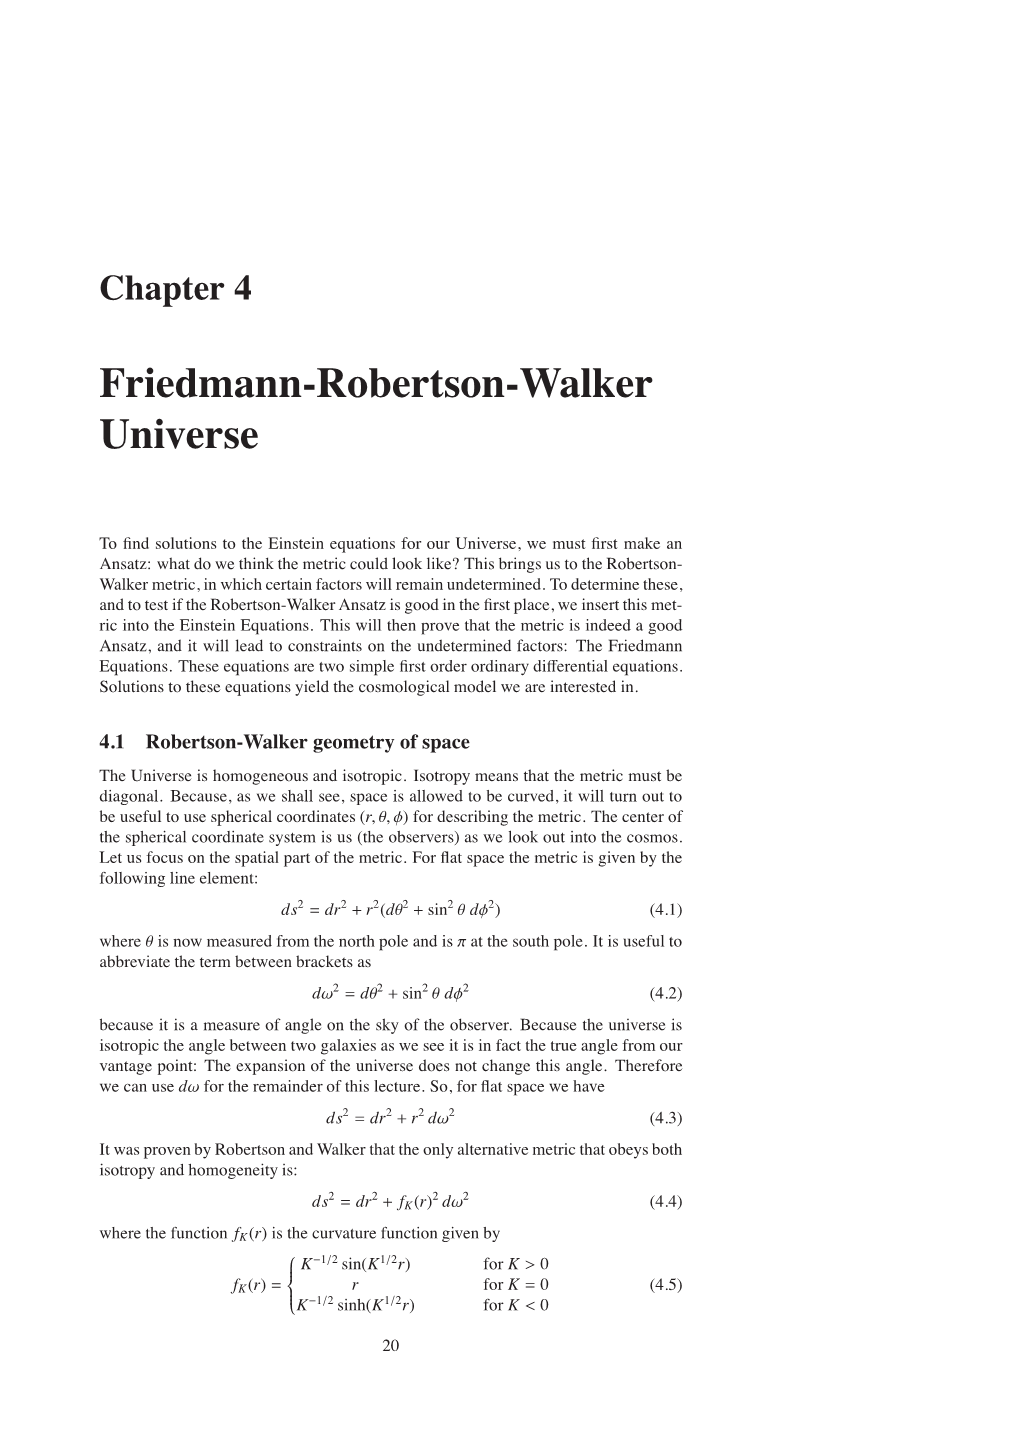 Friedmann-Robertson-Walker Universe